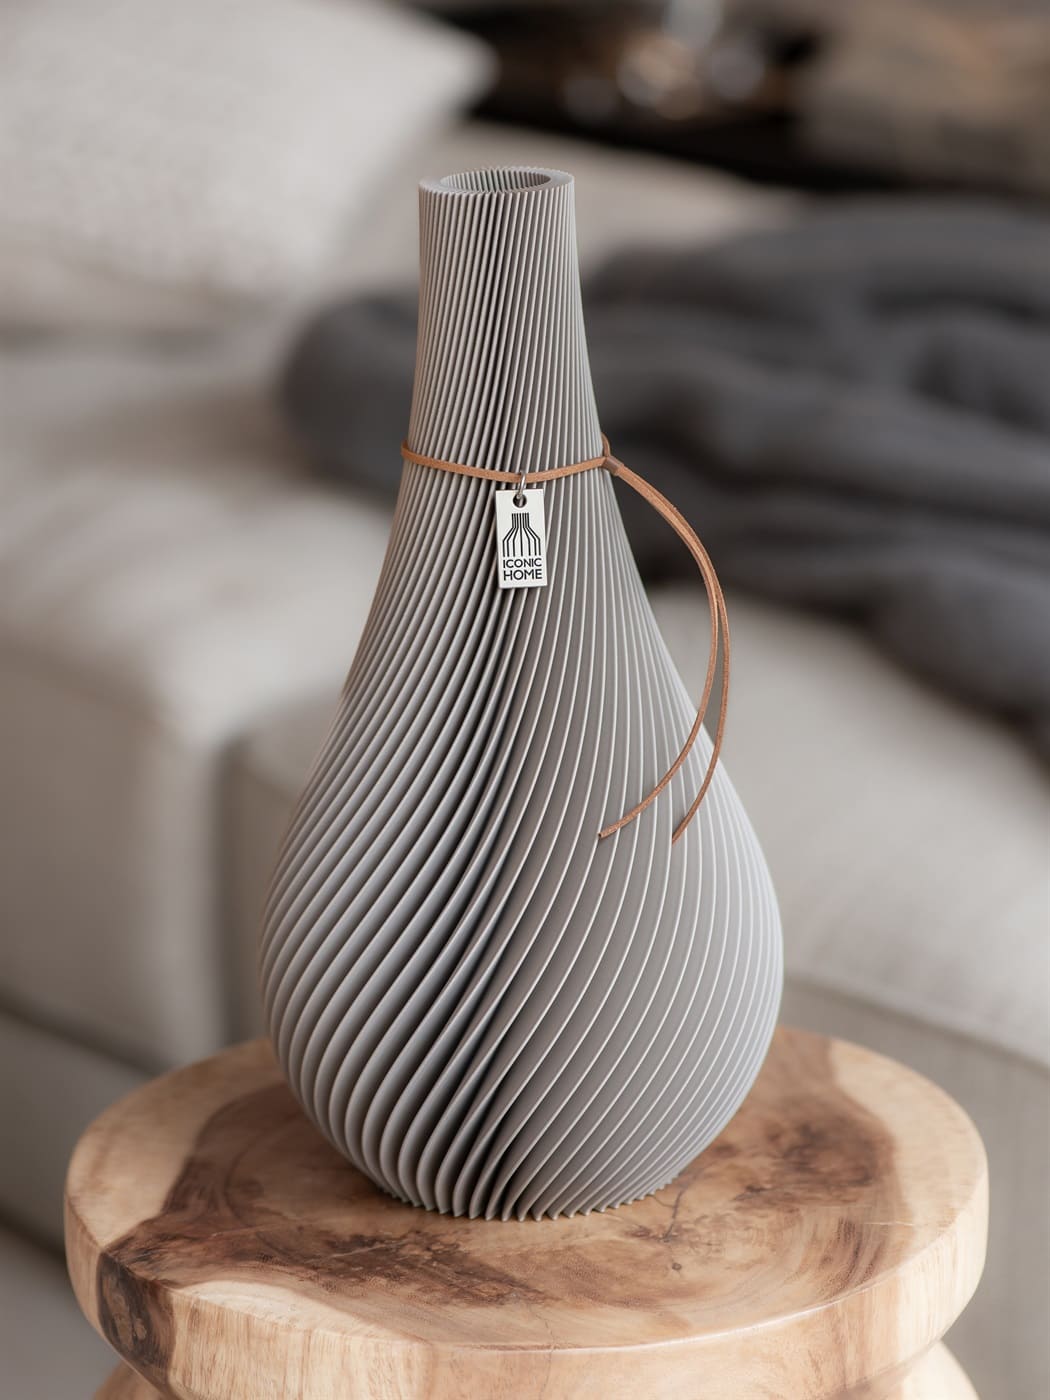 ICONIC HOME Vase Twist cozy greige